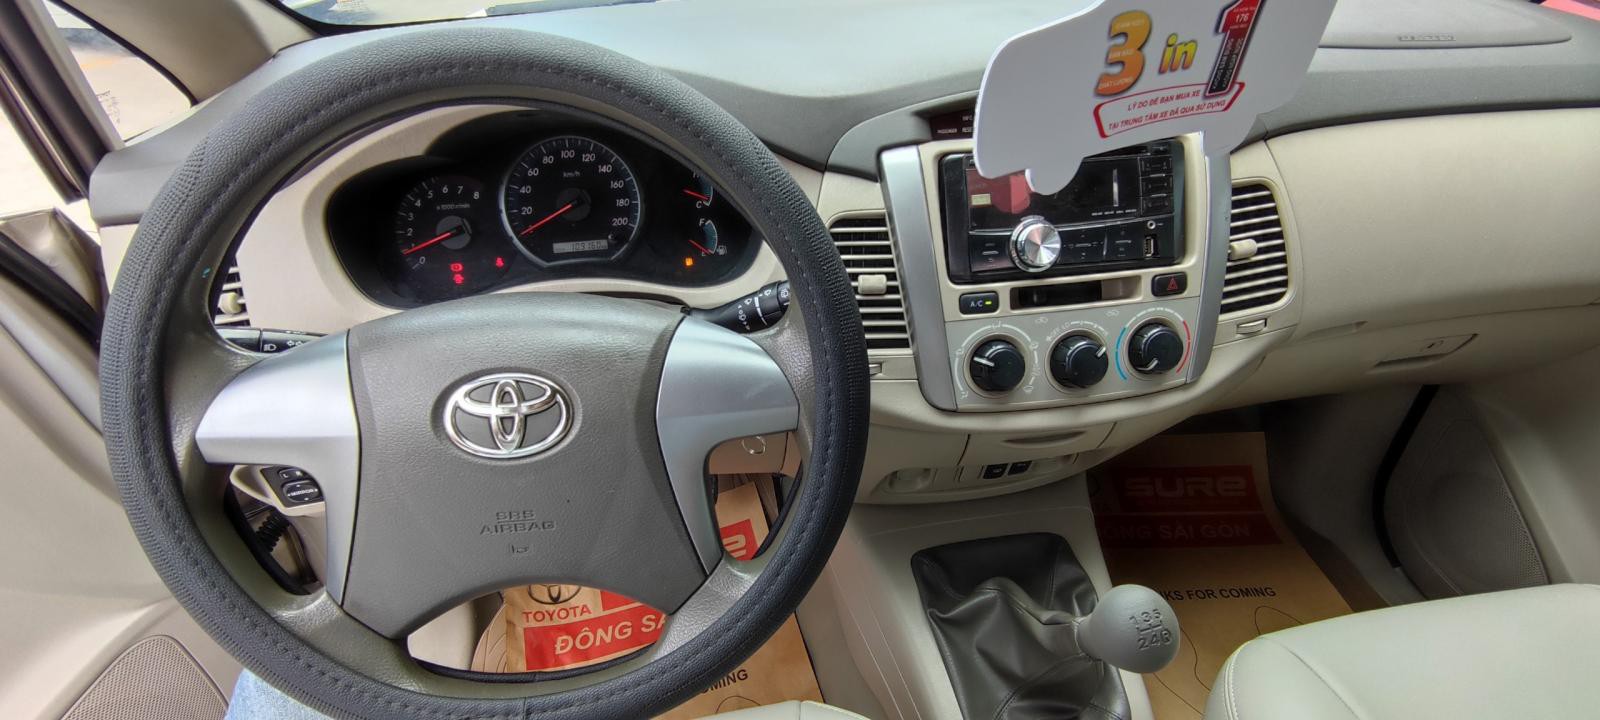 Bán xe Toyota Innova 2.0E 2015 màu nâu vàng, xe đẹp đi kĩ chính hãng Toyota Sure